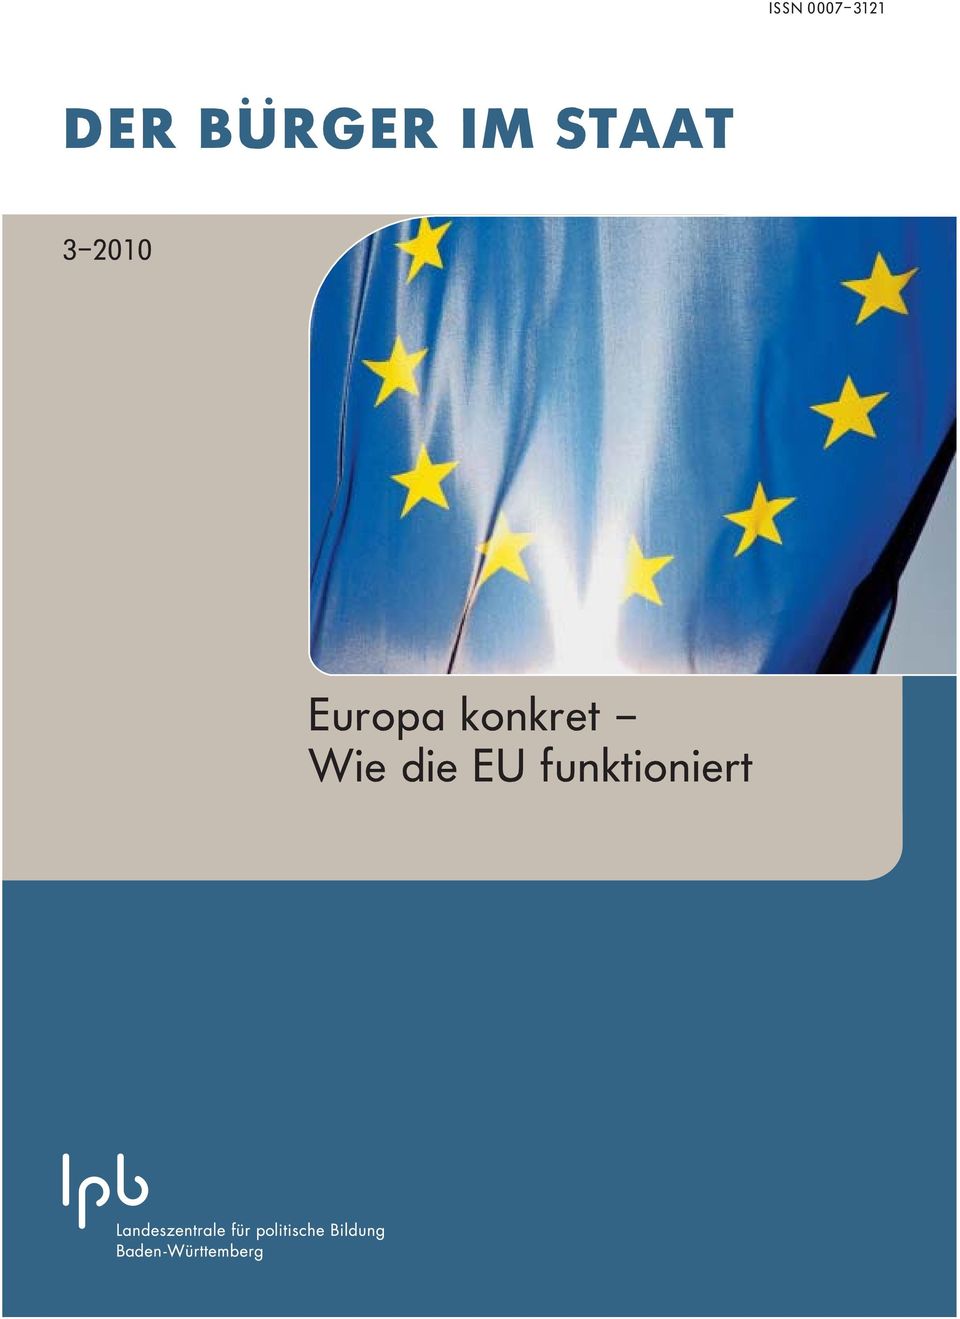 2010 Europa konkret